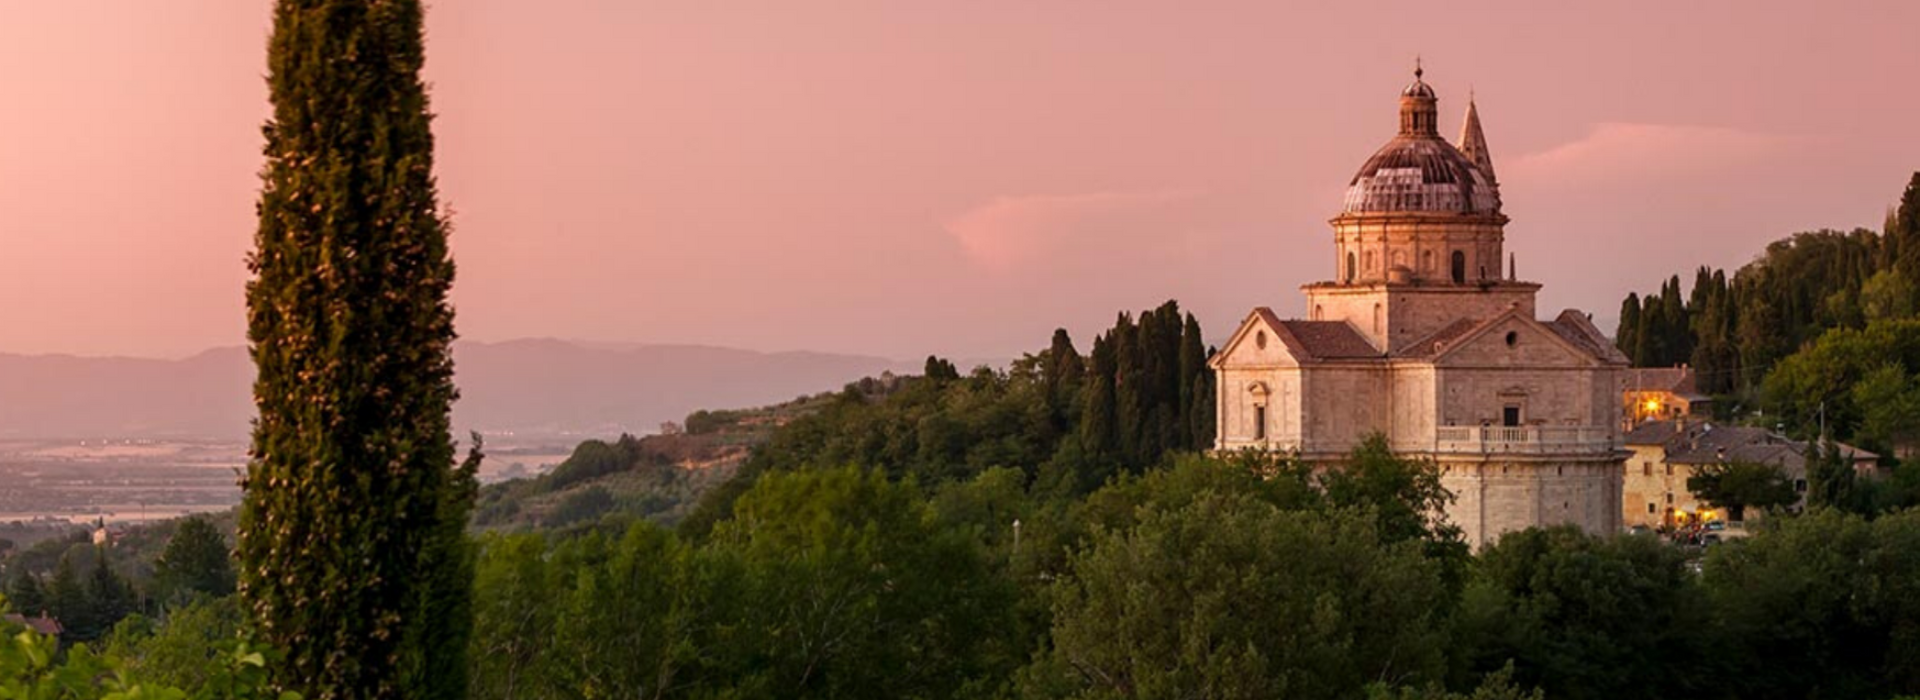 Chiesa di San Biagio al tramonto Montepulciano